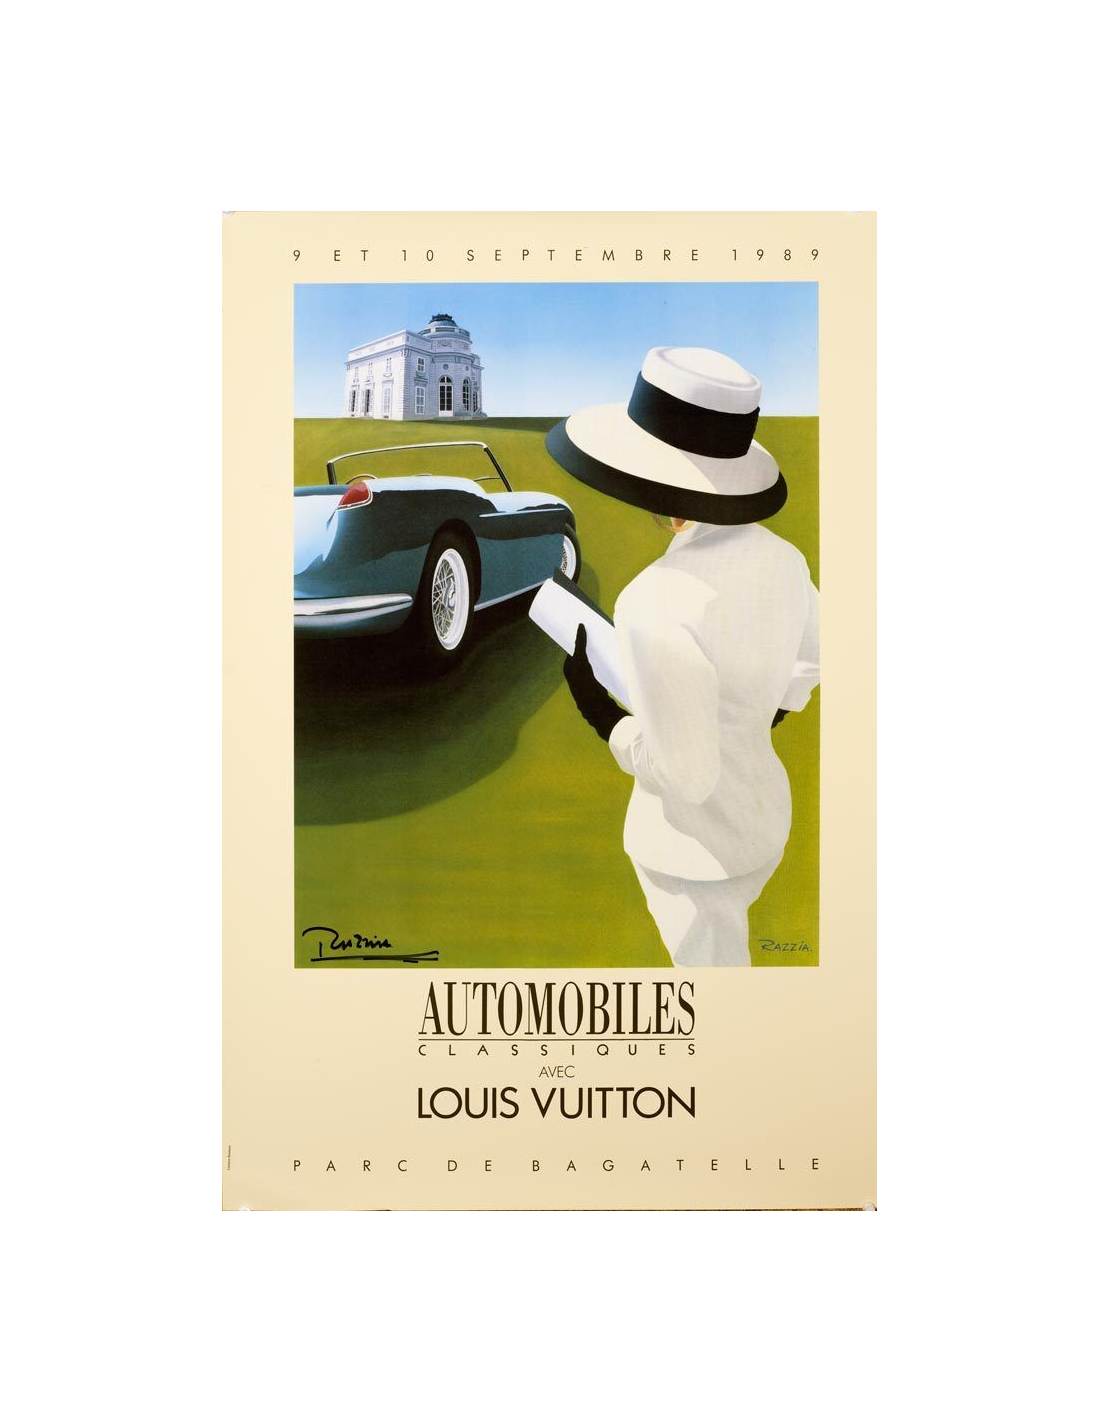 Louis Vuitton Automobiles Classiques by Razzia